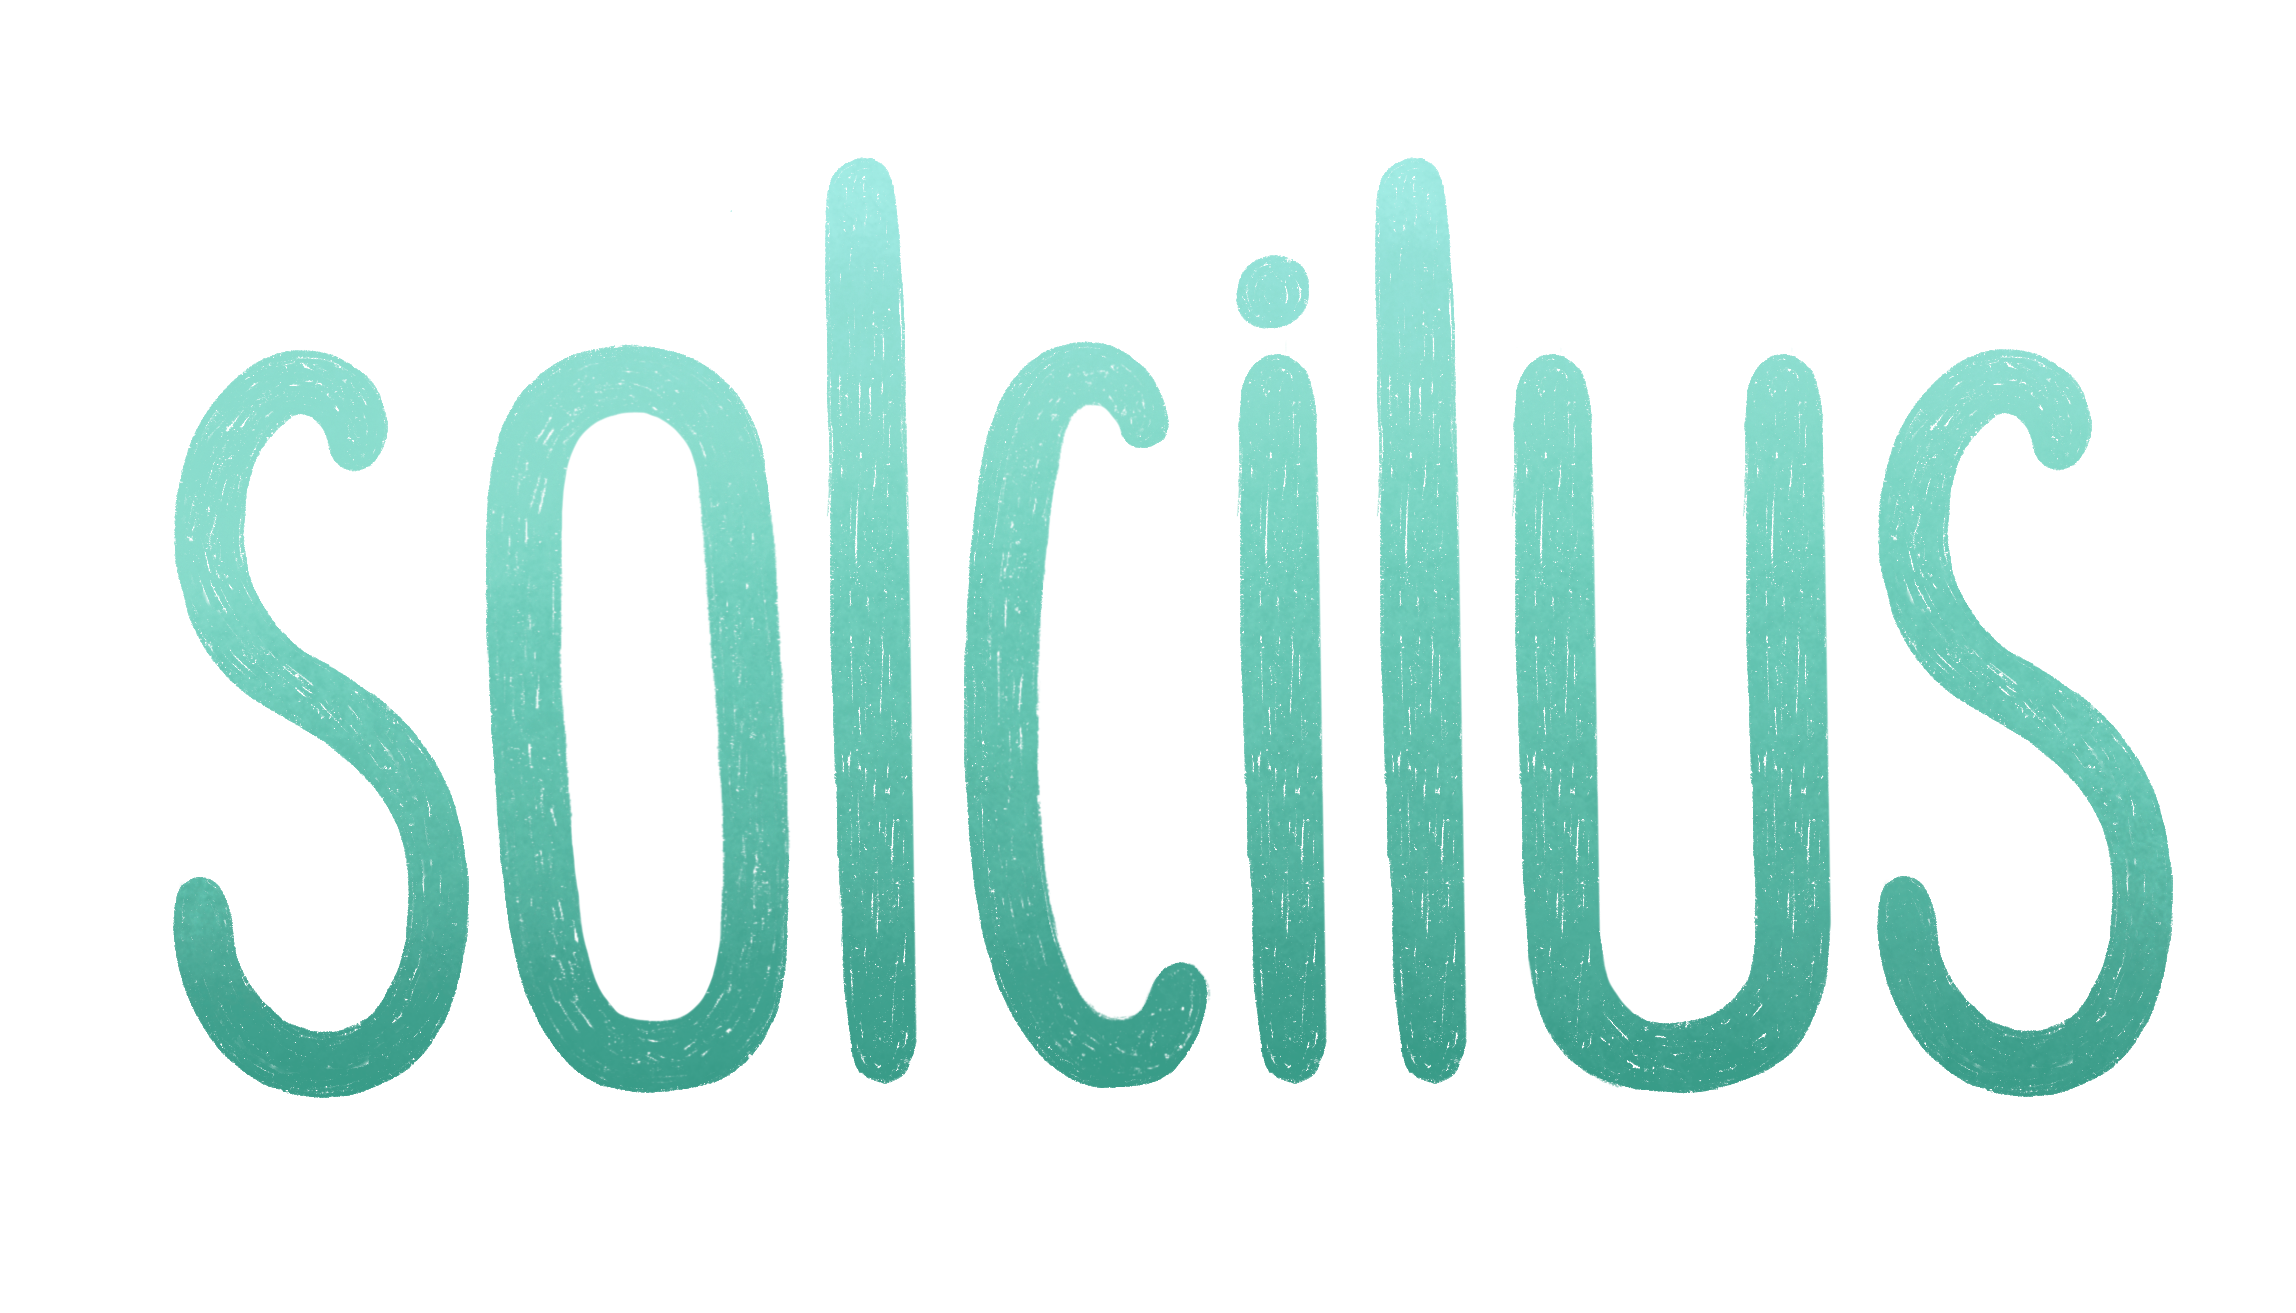 Solcilus